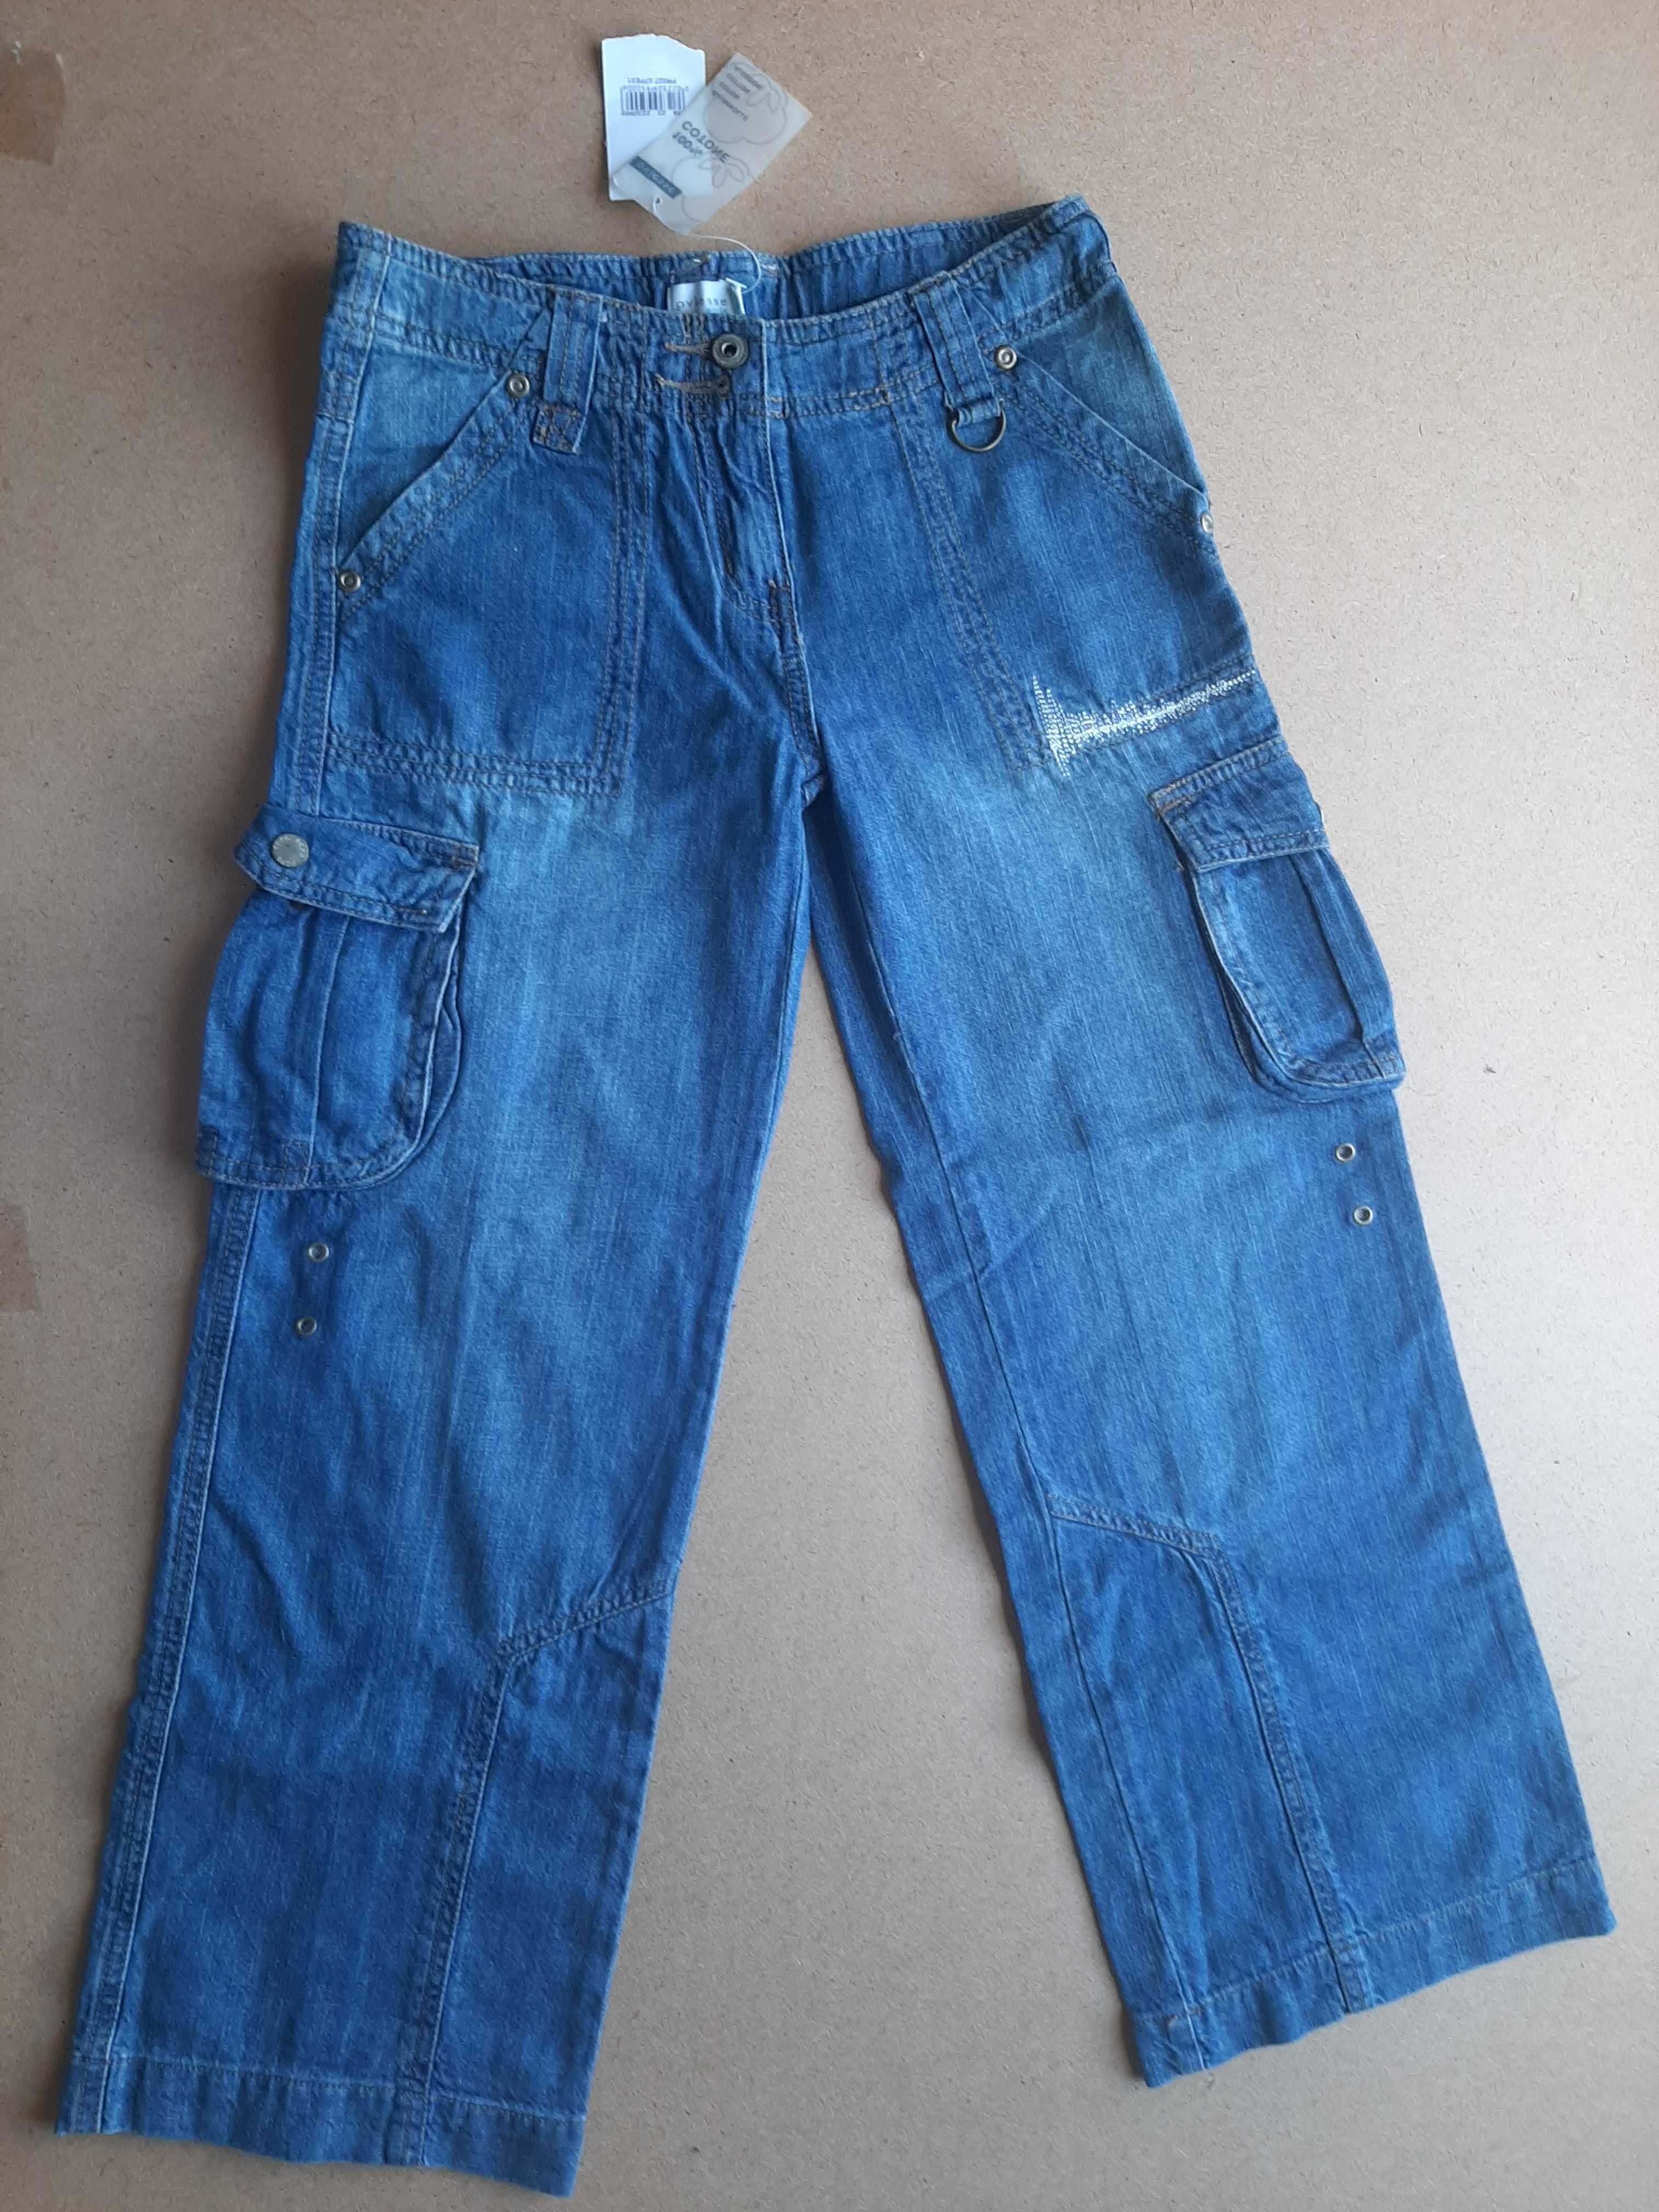 Новые ,легкие летние джинсы для девочки 9 - 10 лет.Рост-140 см